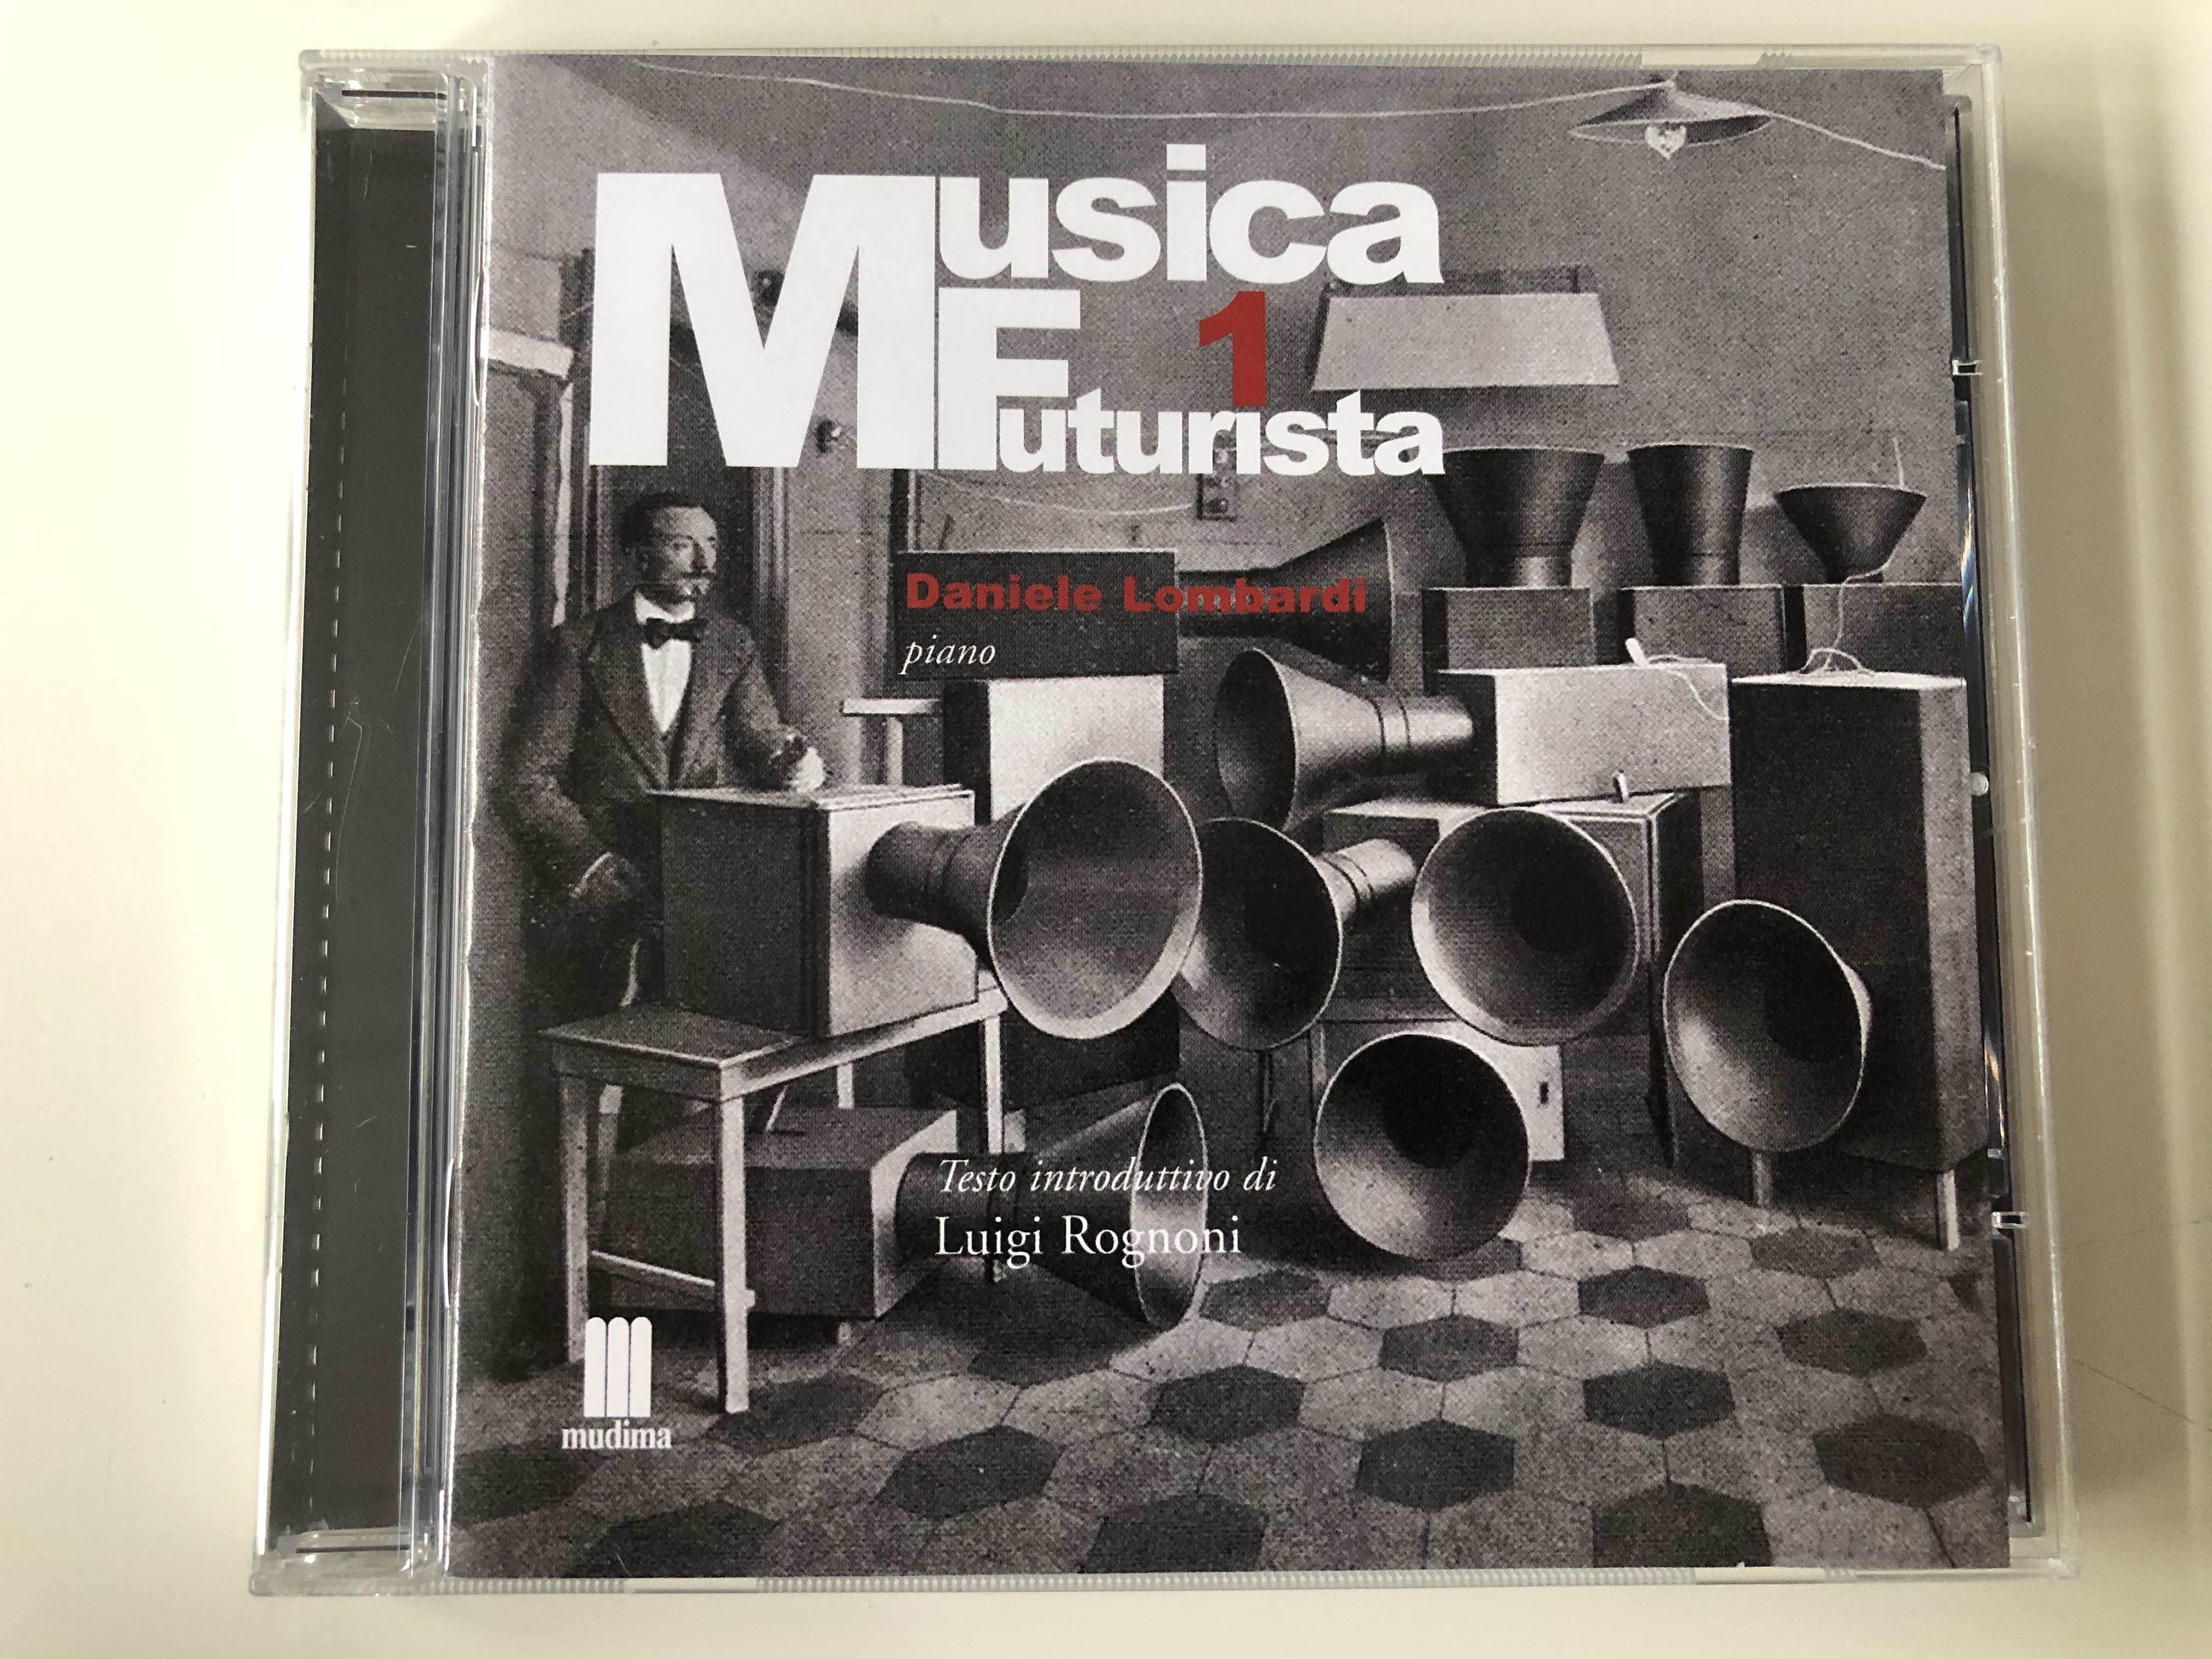 musica-futurista-1-daniele-lombardi-piano-testo-introduttivo-di-luigi-rognoni-mudima-ed.-musicali-audio-cd-2010-8033224410265-1-.jpg